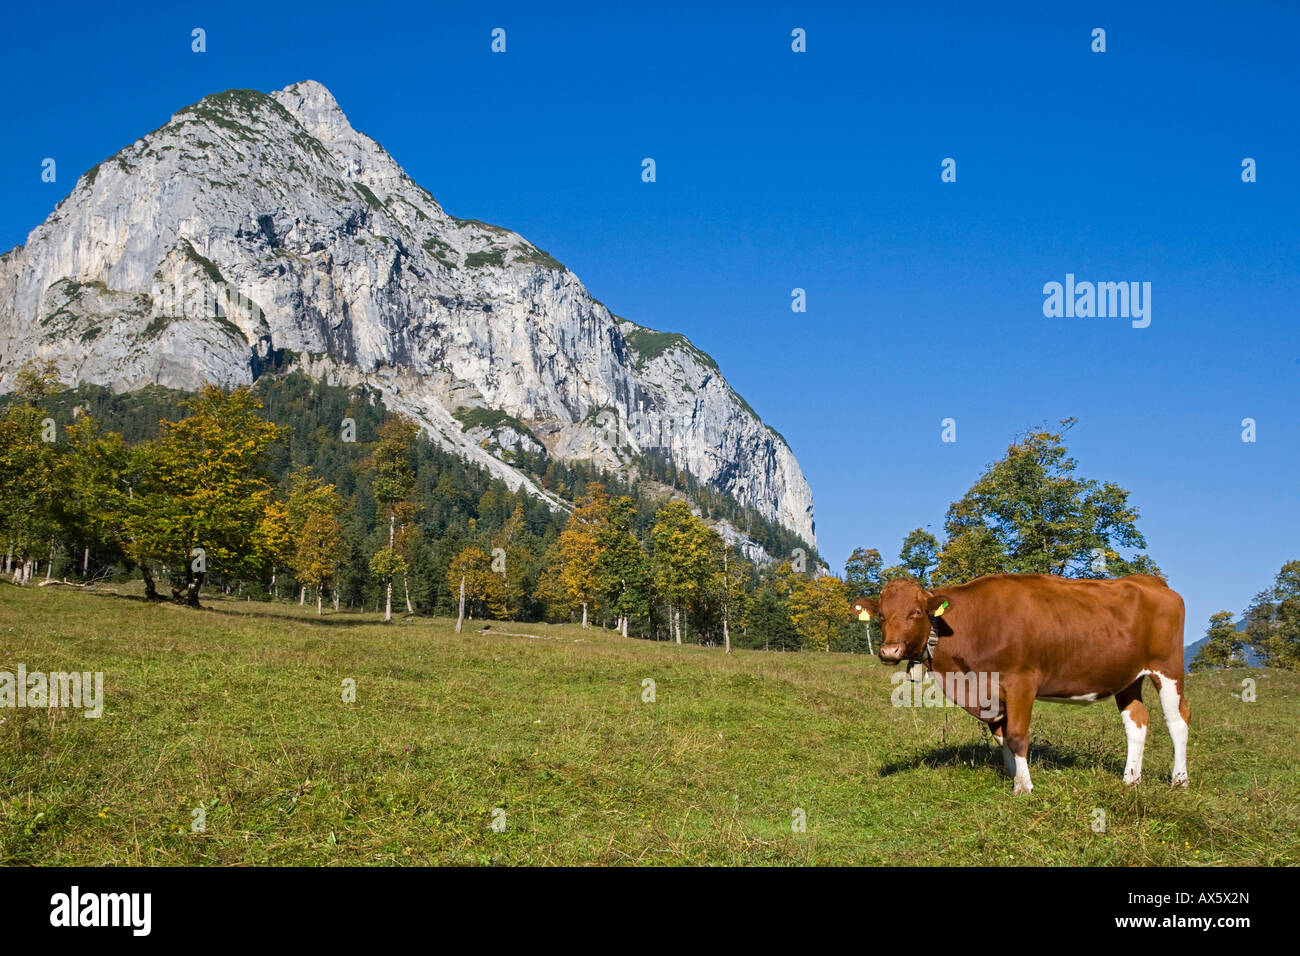 D'origine bovine (vache) debout sur une prairie de montagne, FRA, région Ahornboden, gamme de Karwendel, l'Autriche, Europe Banque D'Images